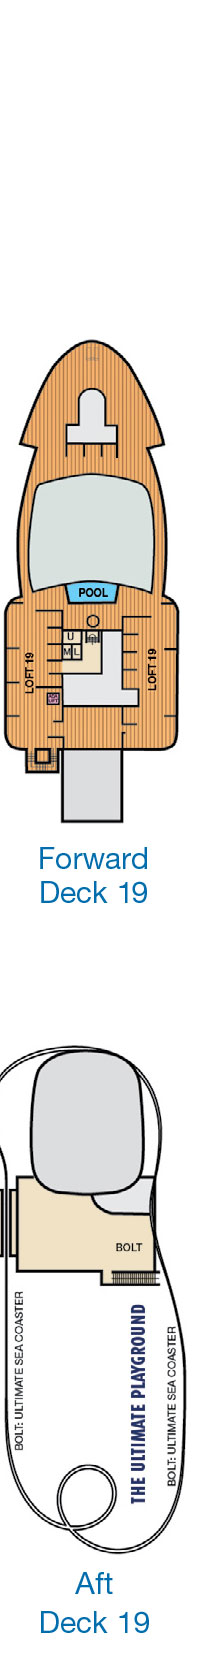 Deck 19 Deck Plan